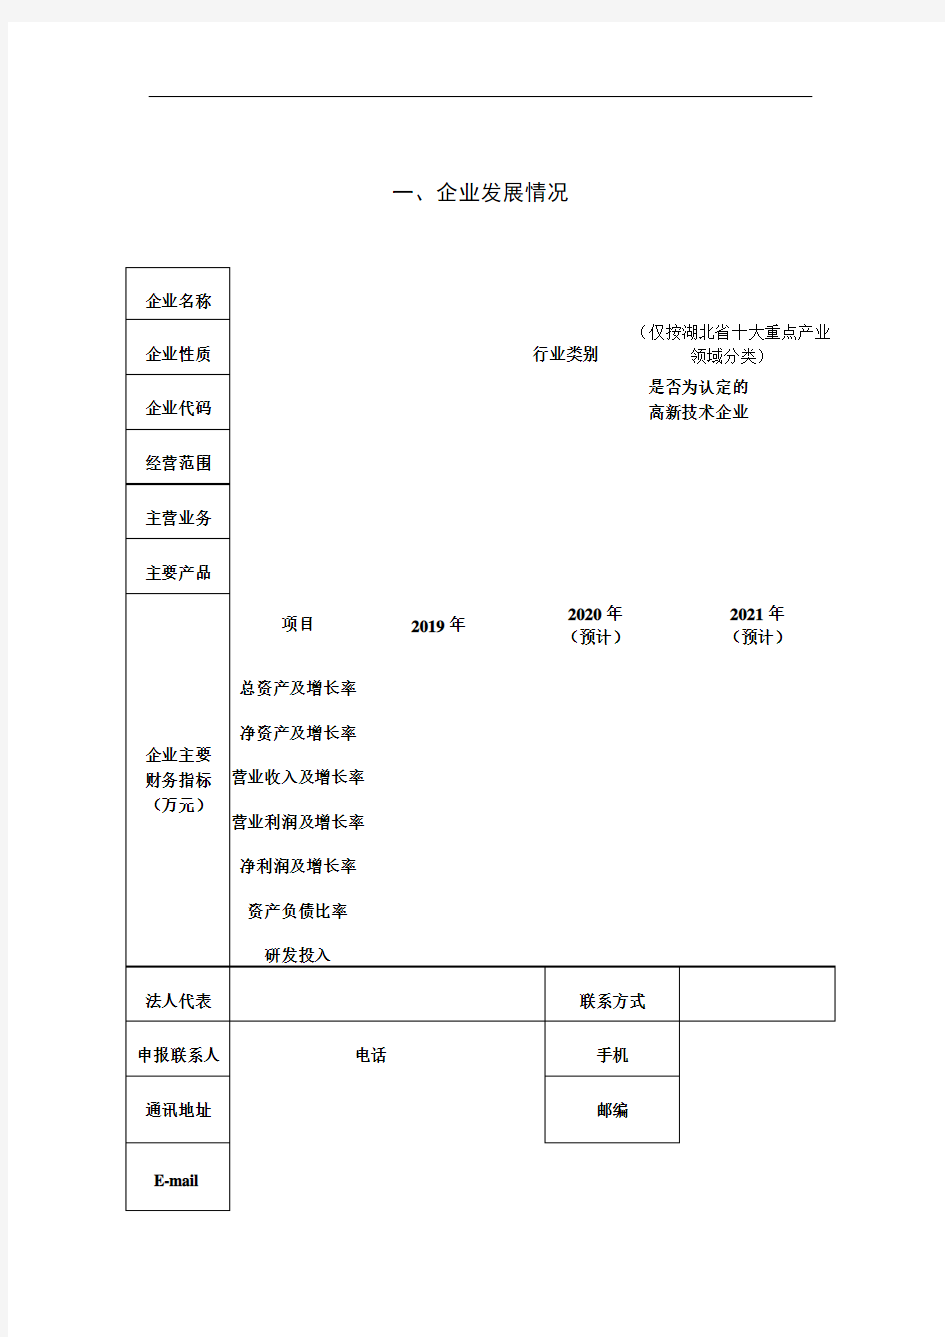 2020年湖北省双创战略团队项目申报书及附件材料说明(科技创新战略团队--A类)